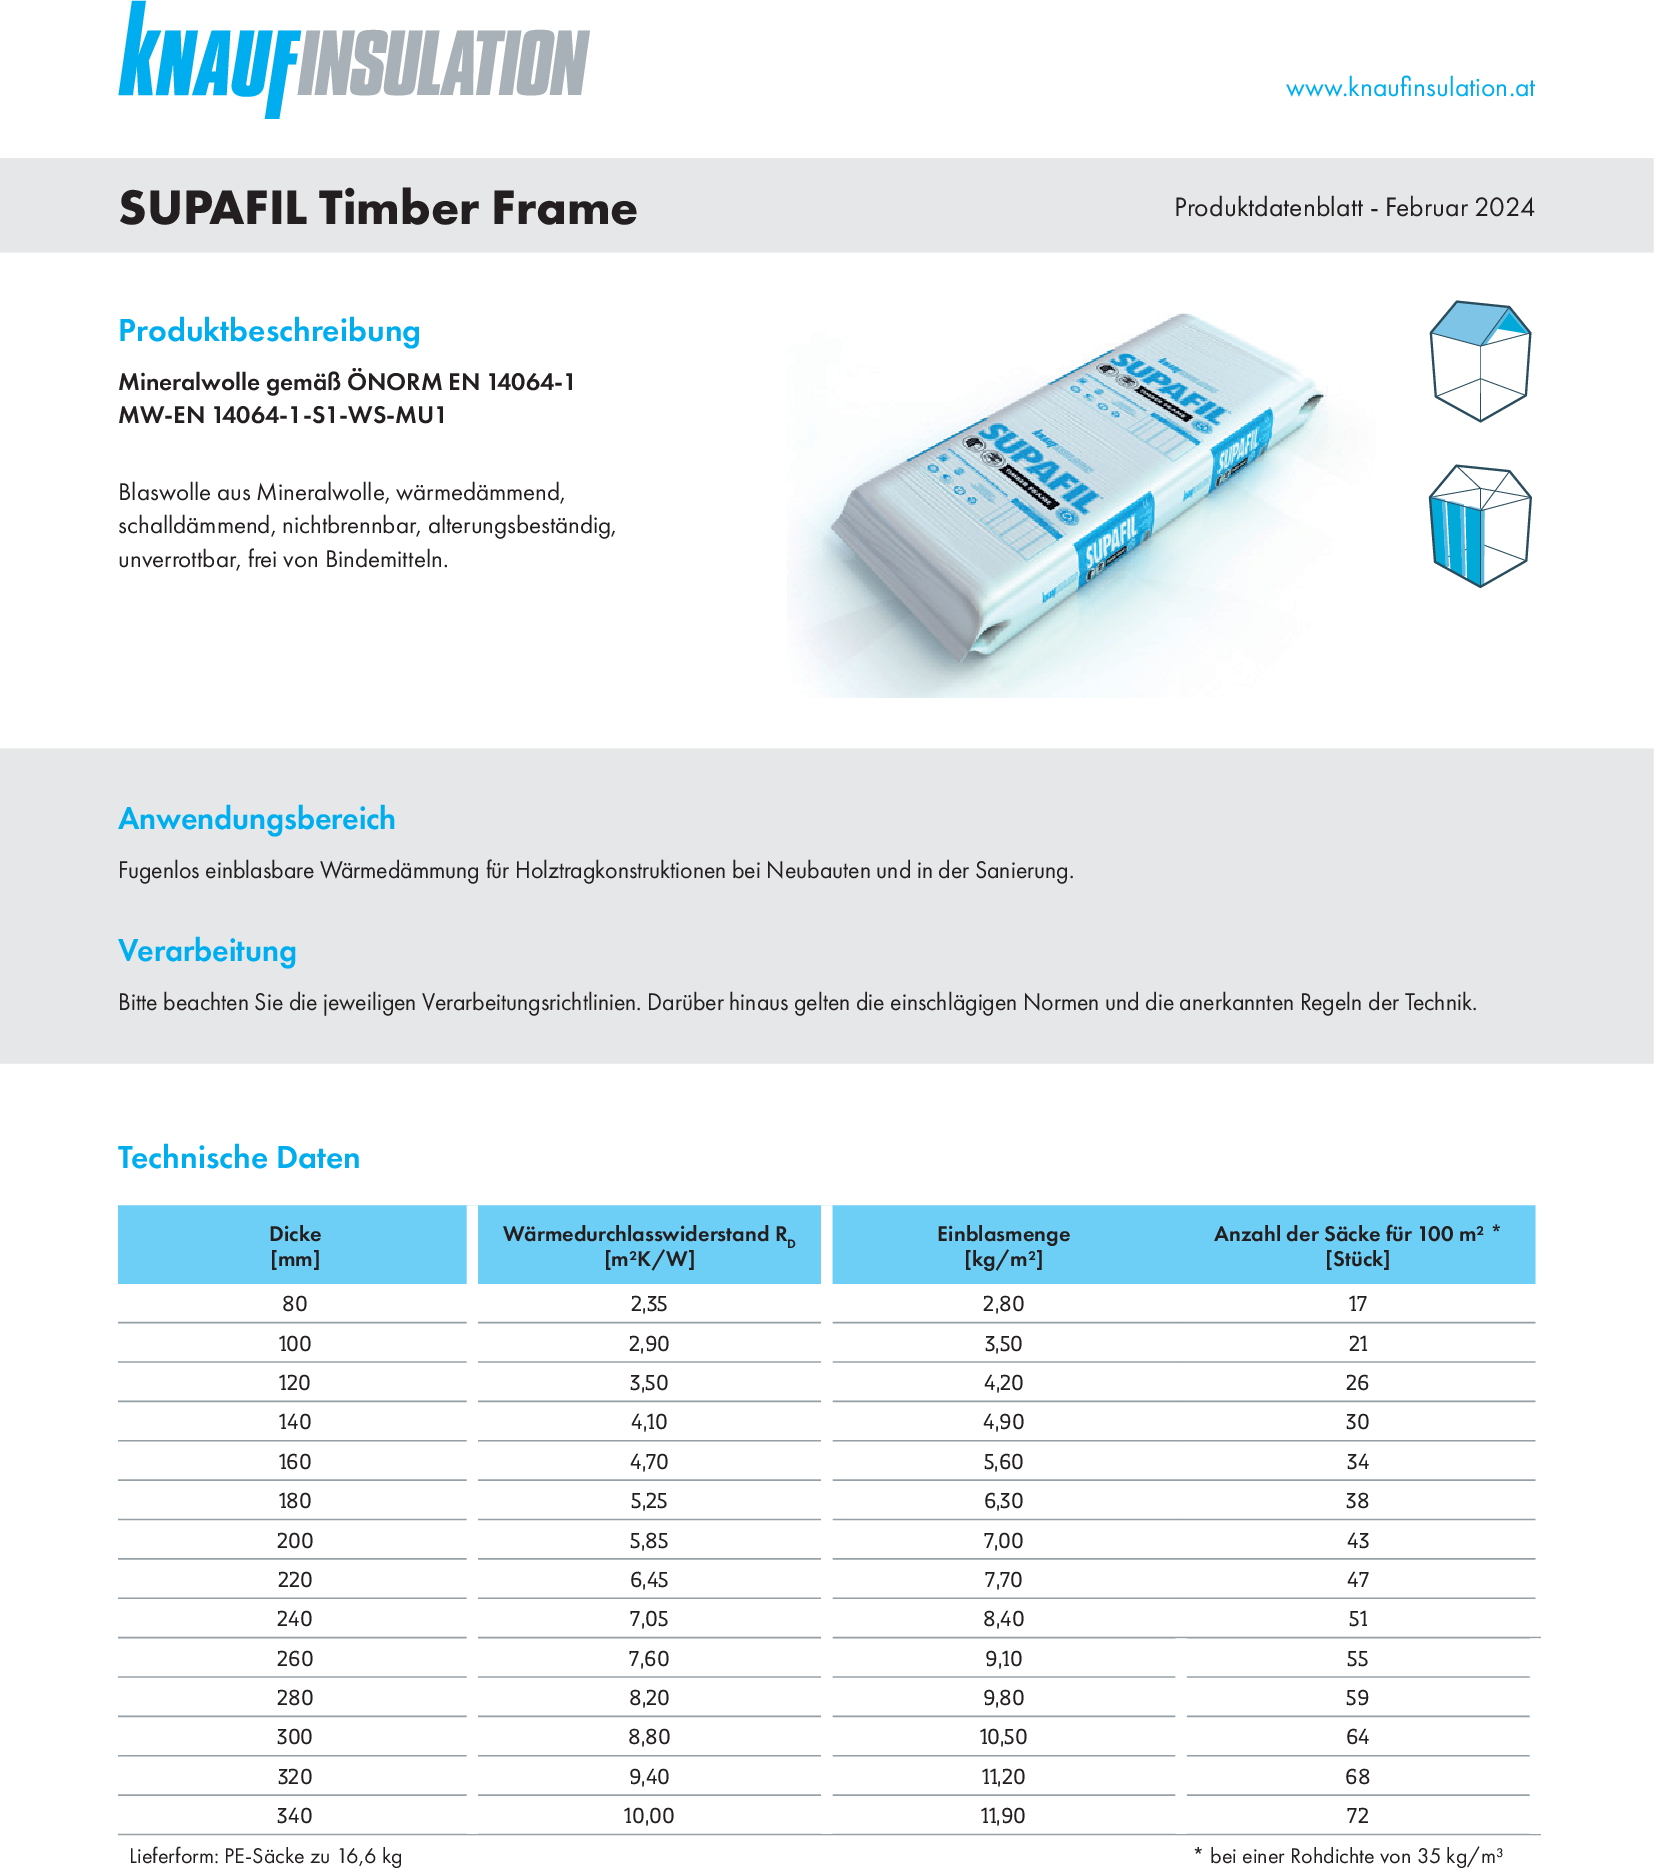 SUPAFIL Timber Frame, Produktdatenblatt